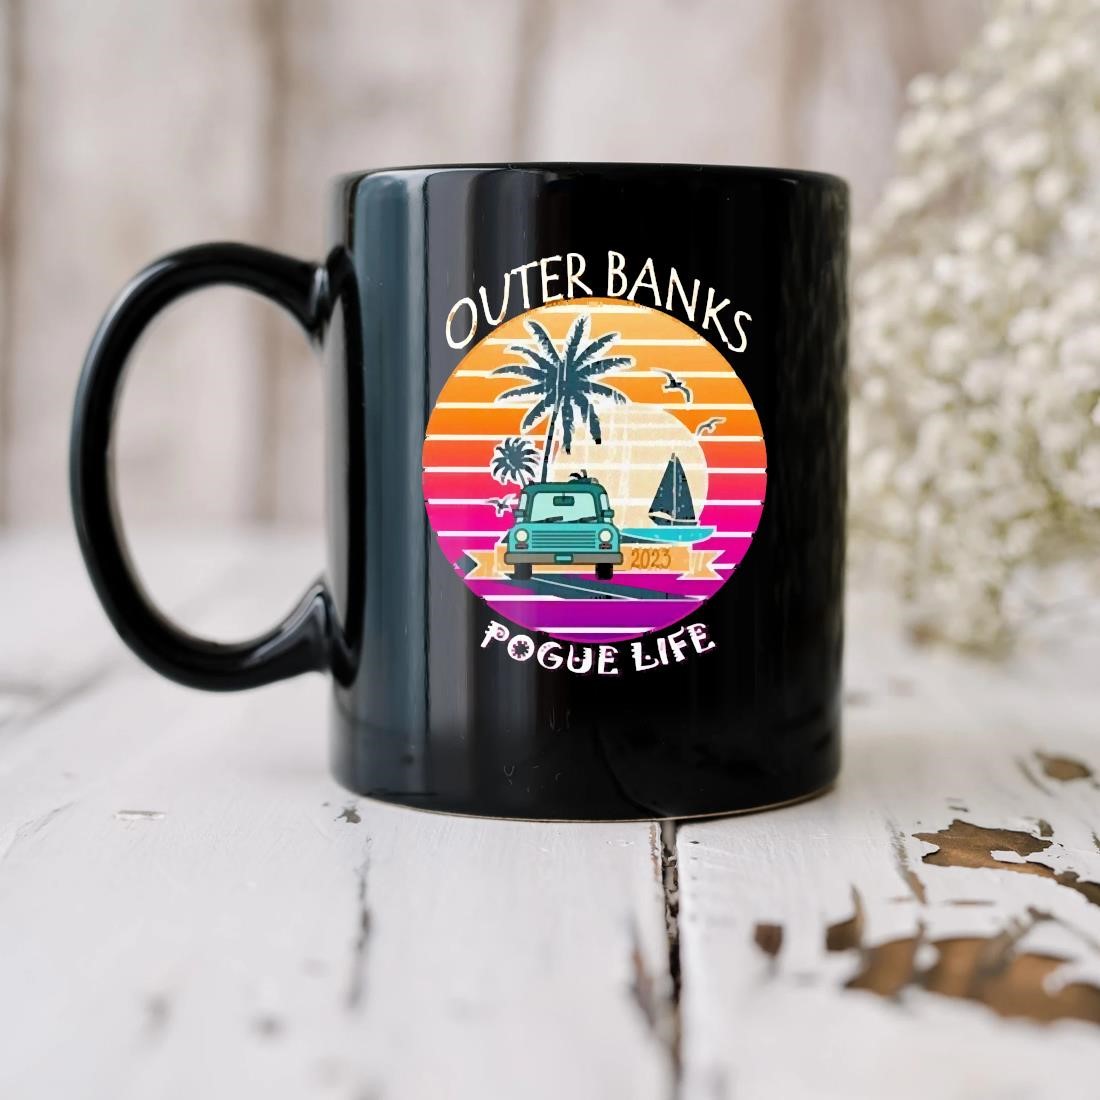 Outer Banks Pogue Life Vintage Mug biu.jpg